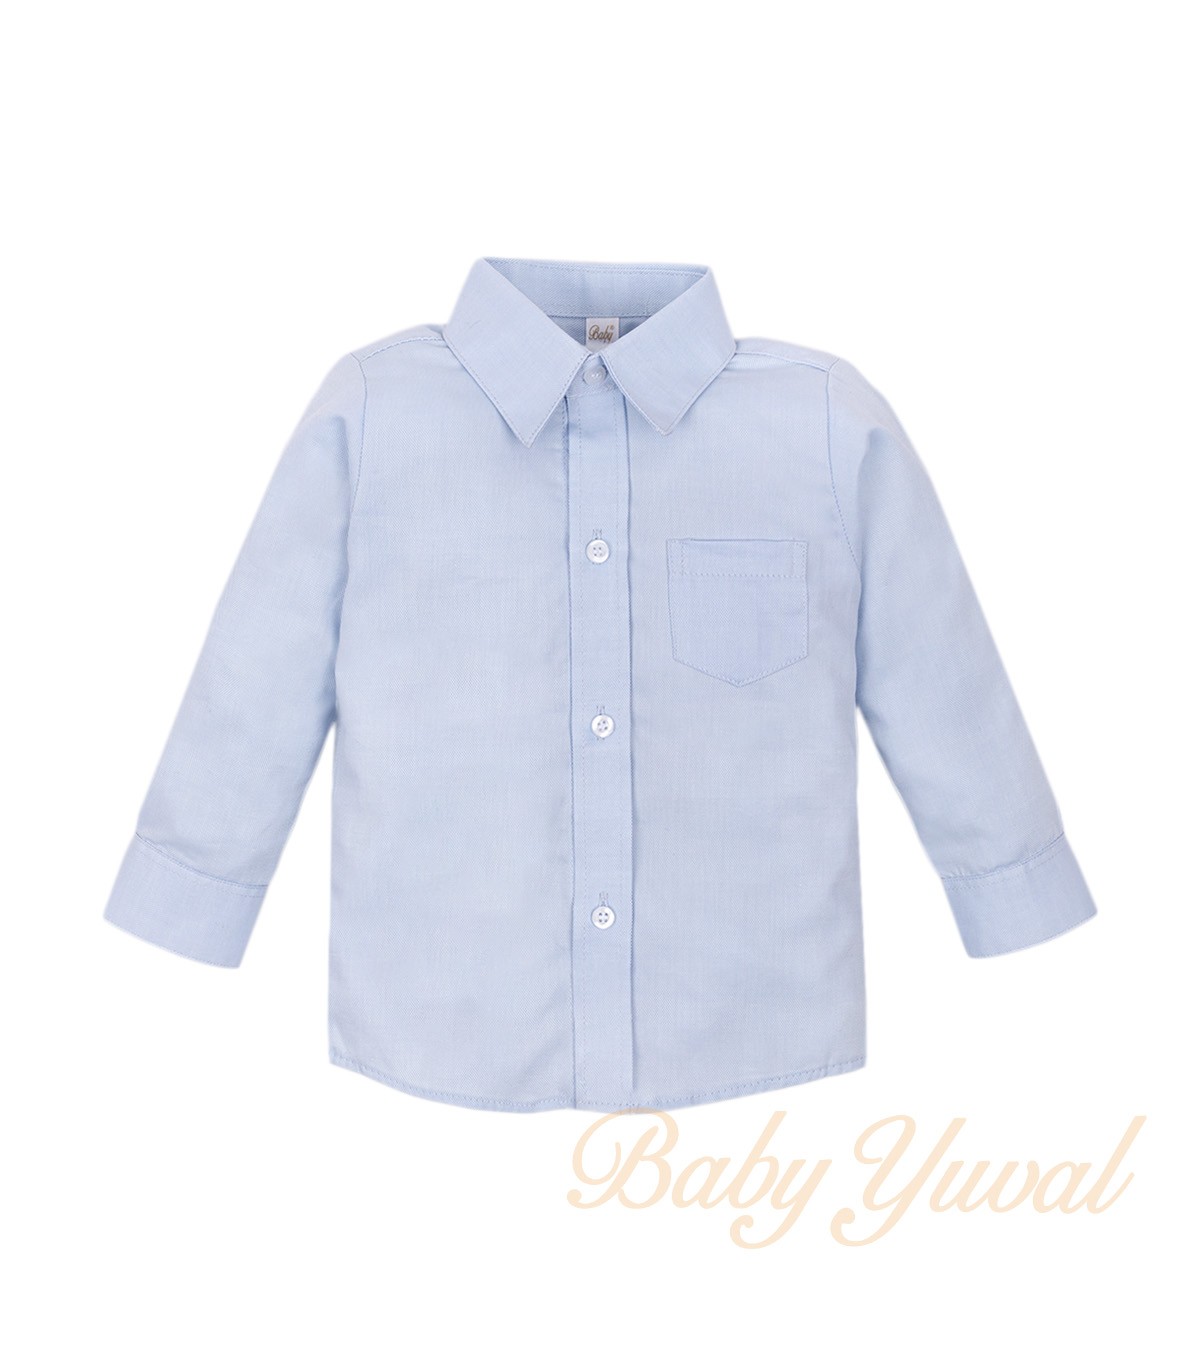 Babylovanta - ropa de bebé niño de manga larga jersey modelo bebé